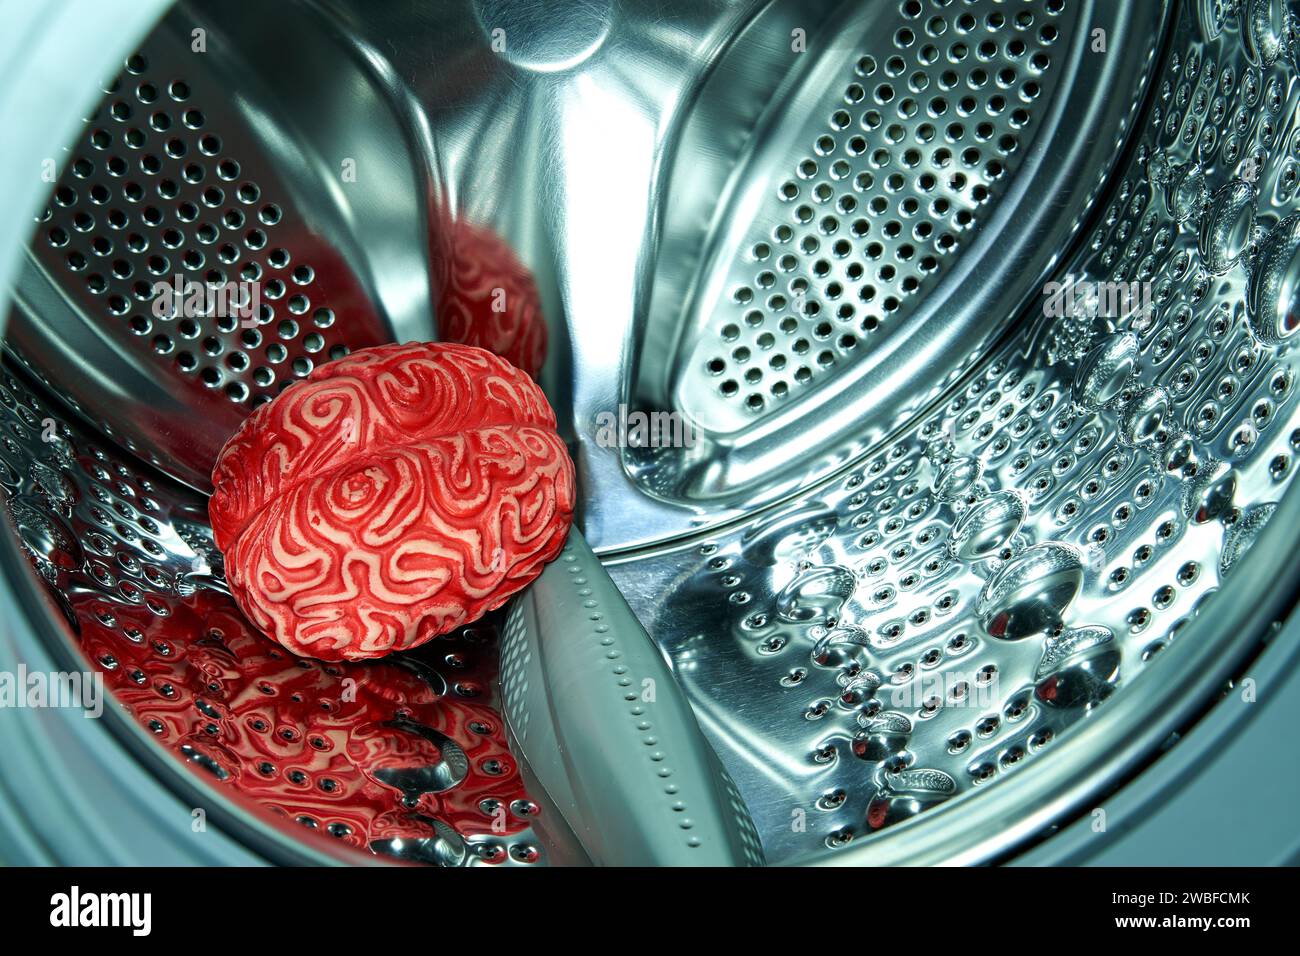 Menschliches Gehirn aus rotem Gummi in einer Waschmaschine, Gehirnwäschekonzept. Stockfoto